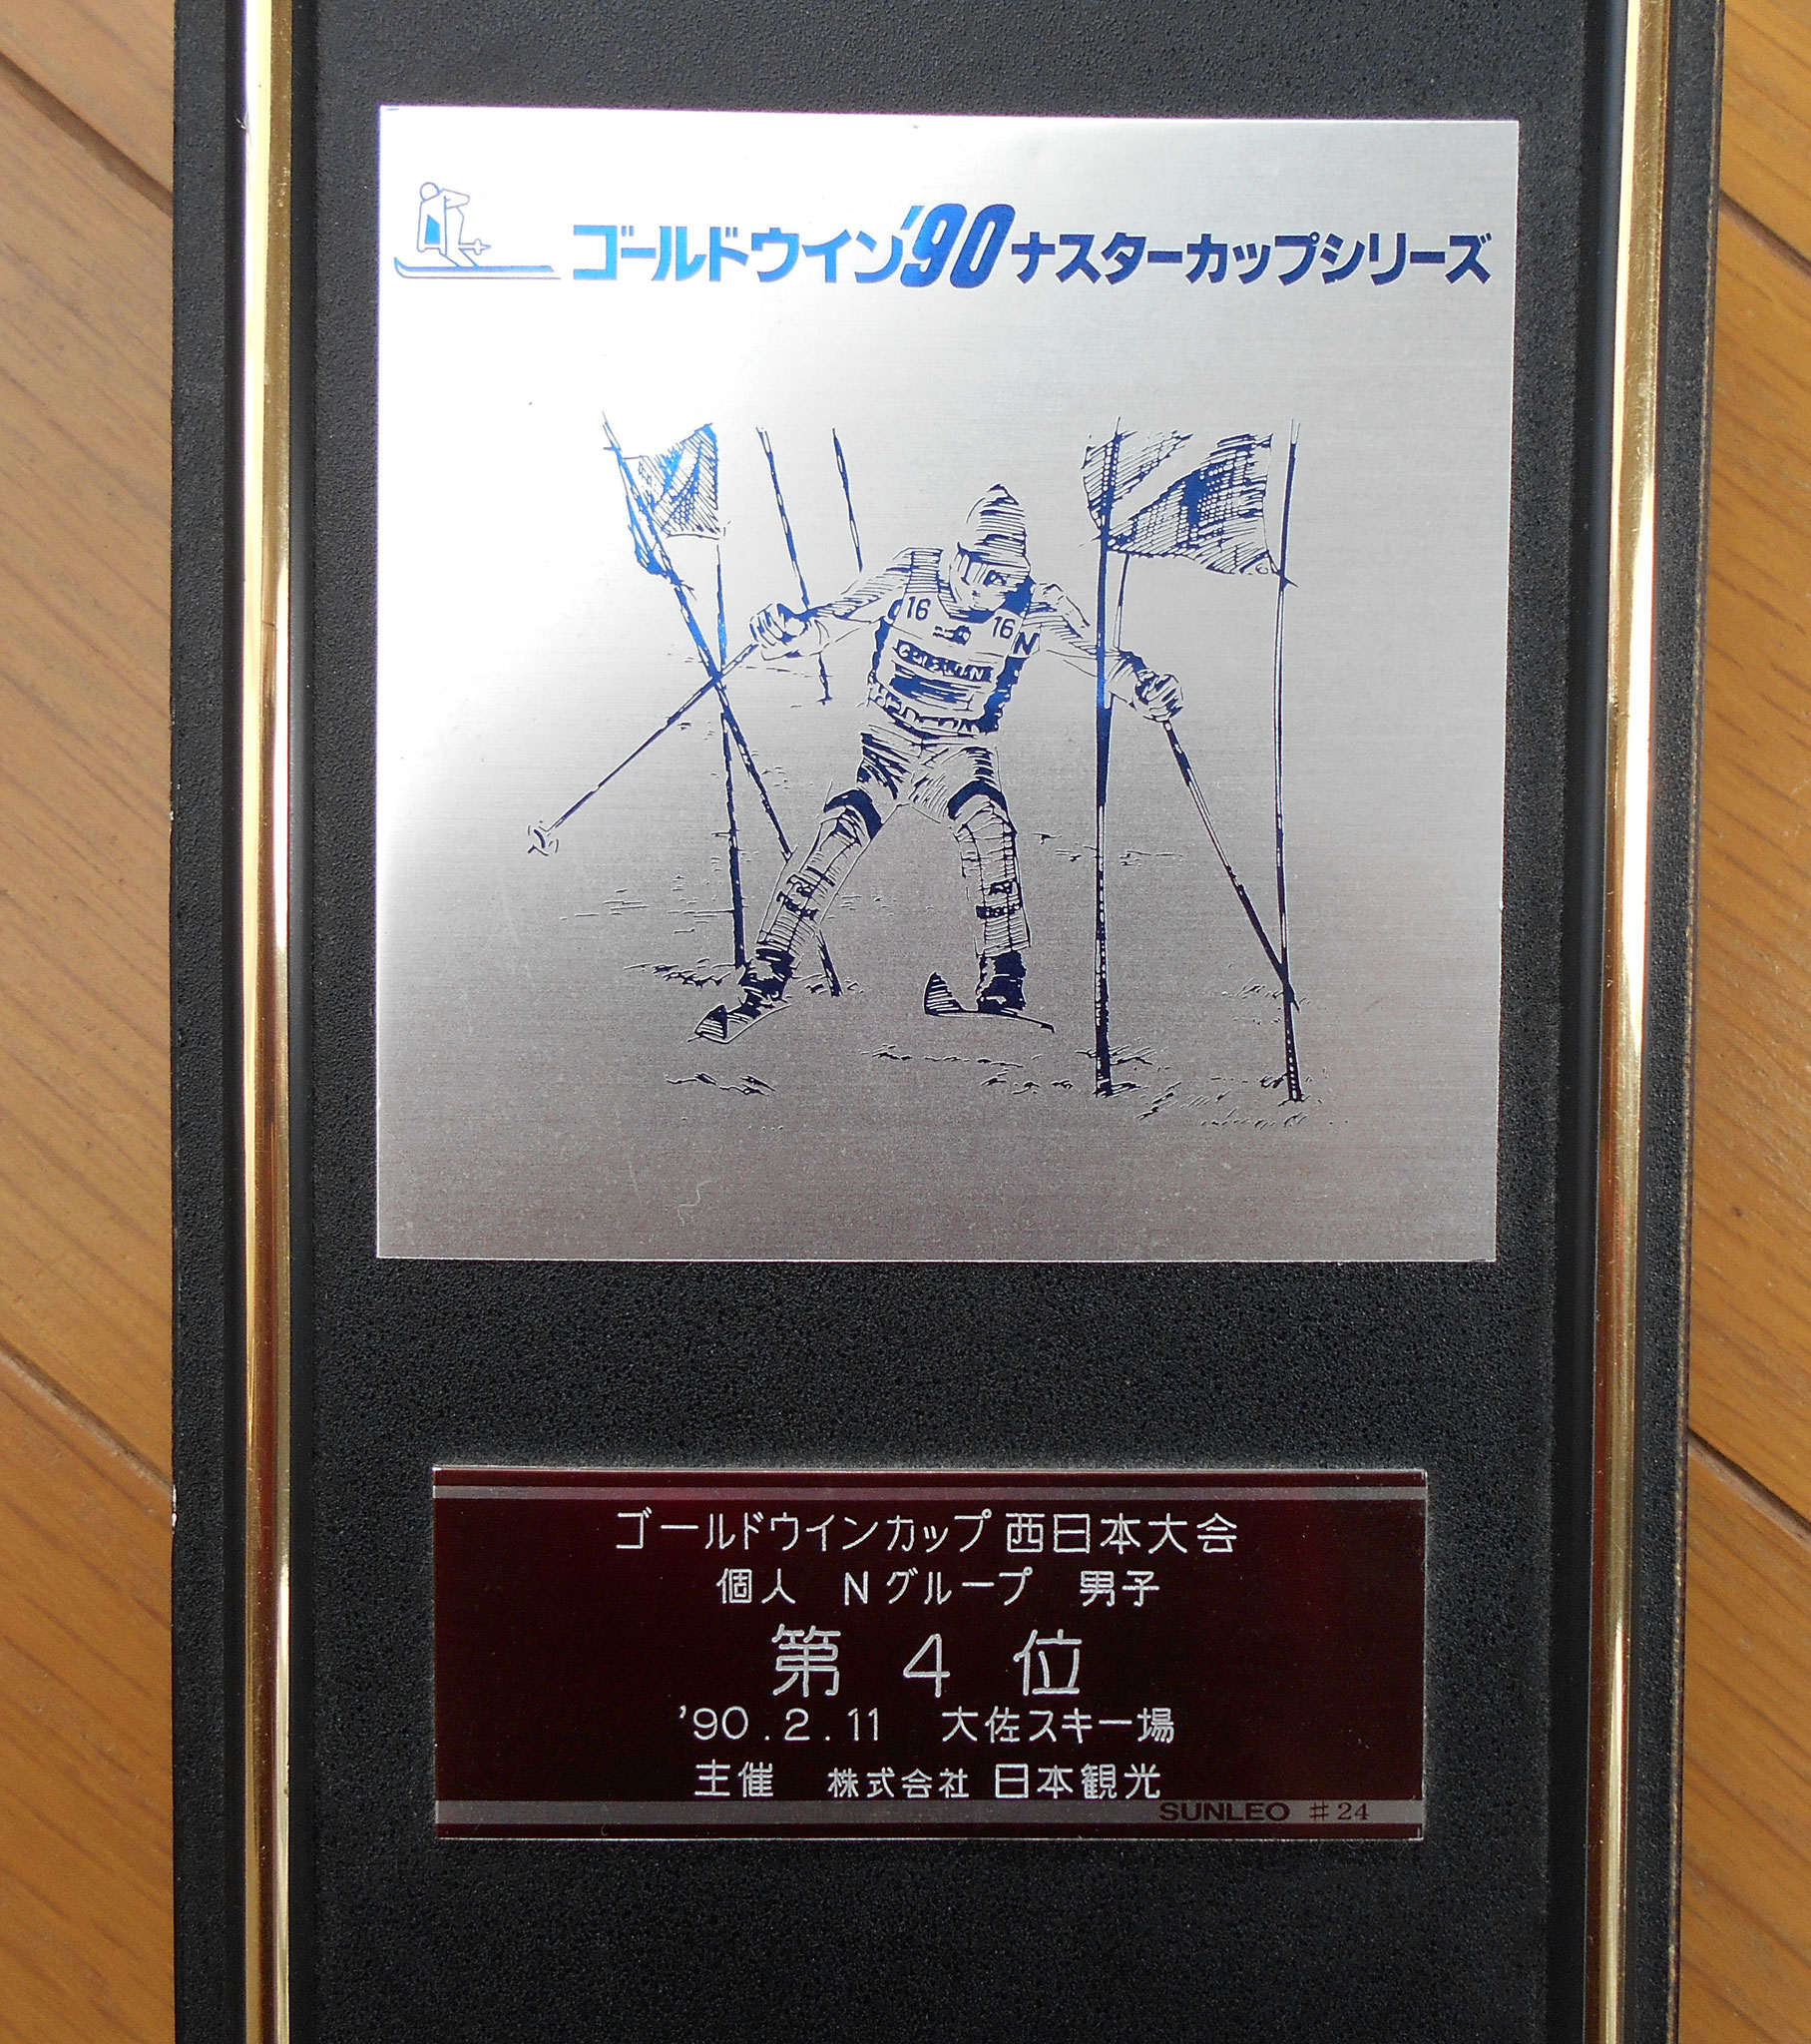    1990年2月11日大佐スキー場（広島県）ナスターカップ西日本大会４位